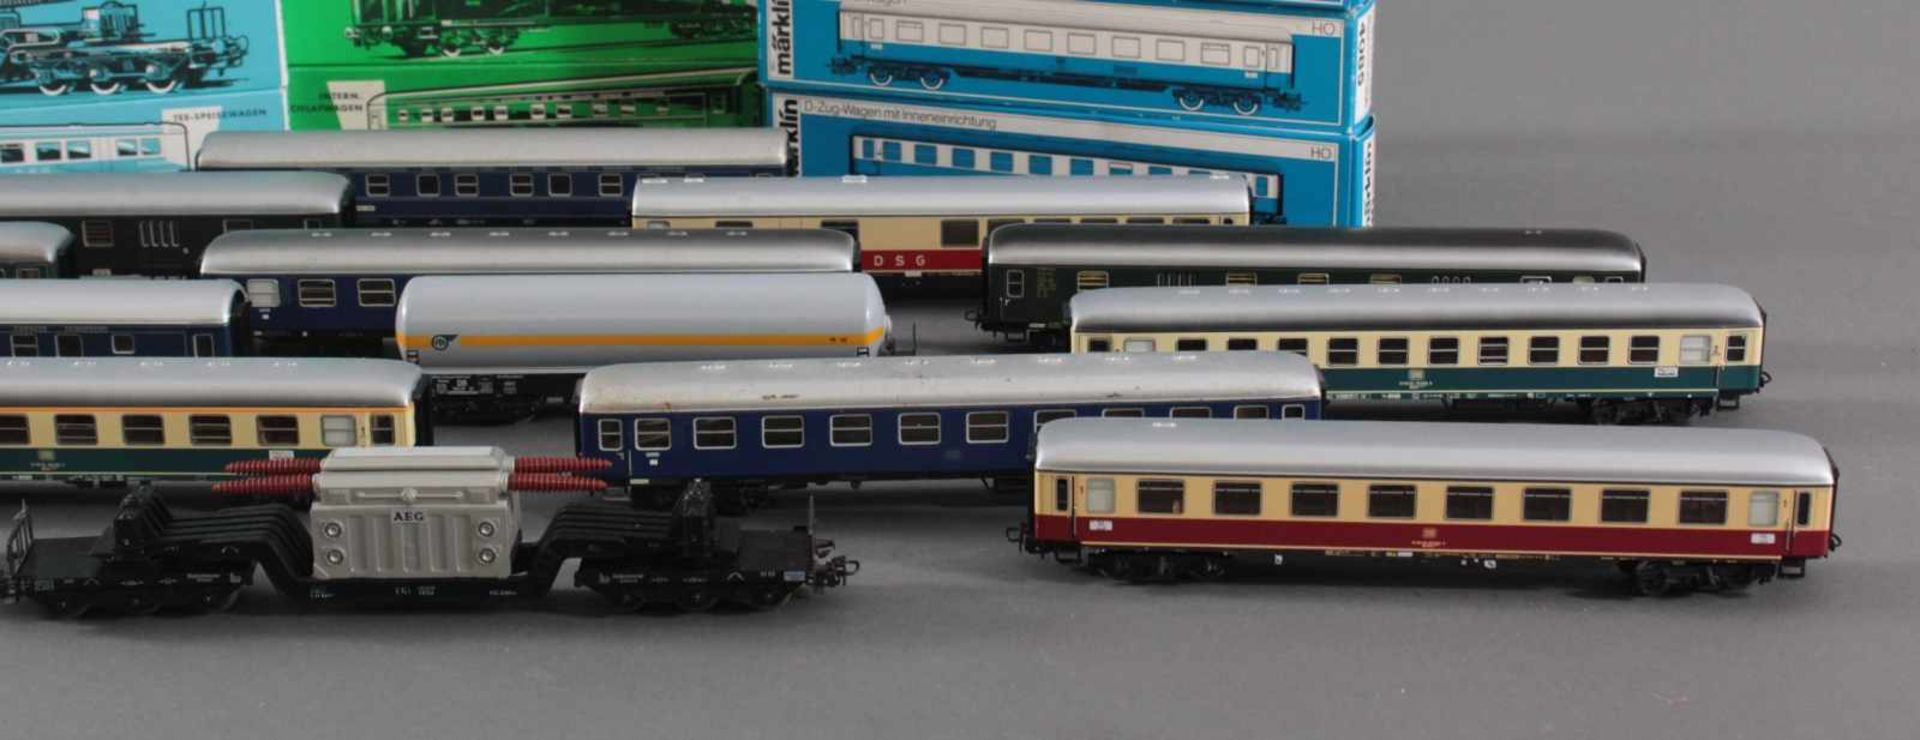 14 Märklin Güterwaggons in der Originalverpackung Spur H0Modellnummer 4044, 4064, 4052, 4617, - Bild 3 aus 4